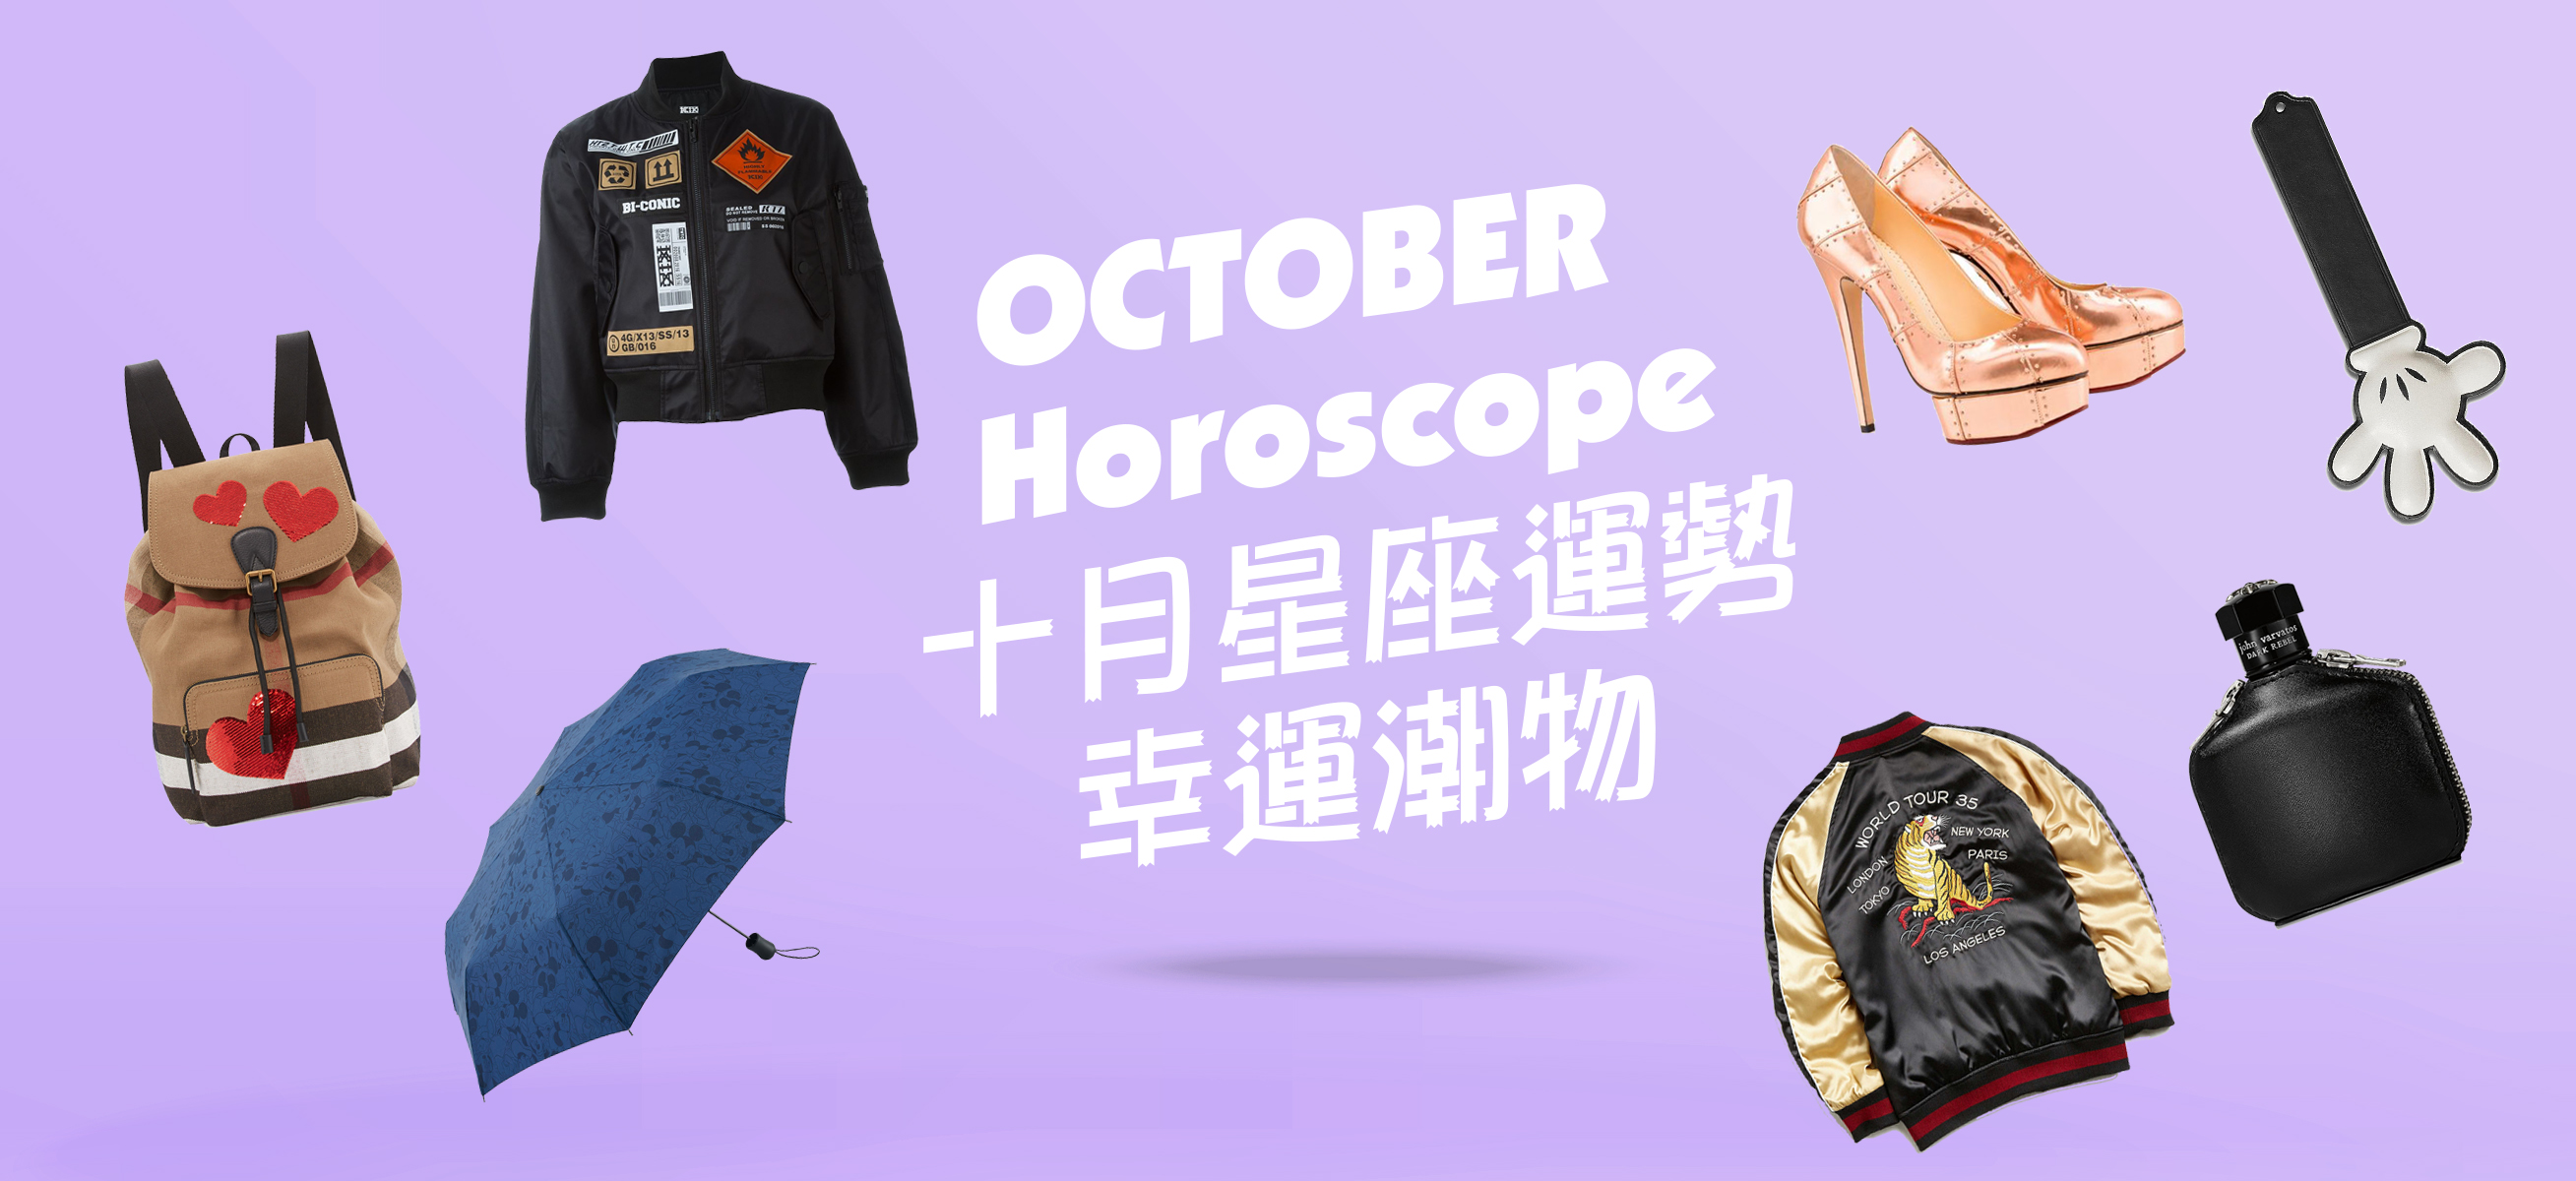 Horoscope OCT banner